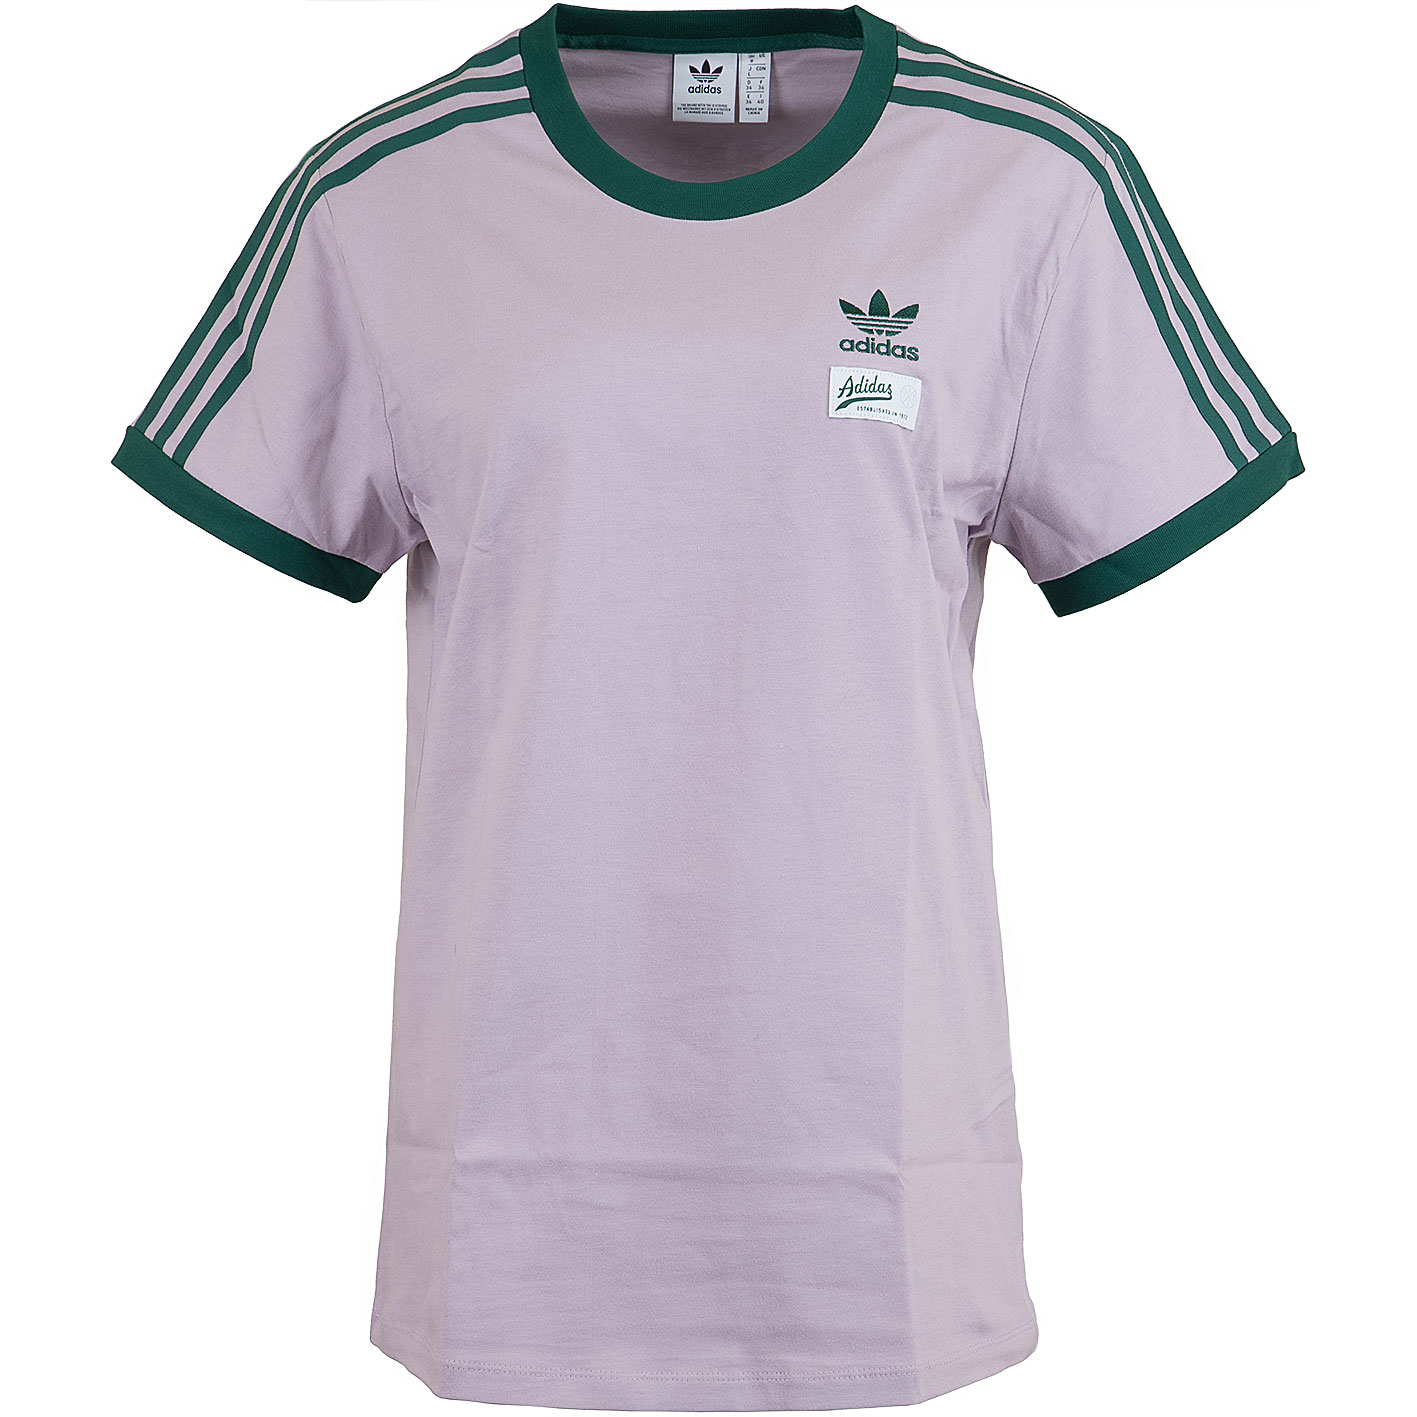 ☆ Adidas Originals Damen T-Shirt 3-Stripes lila - hier bestellen!